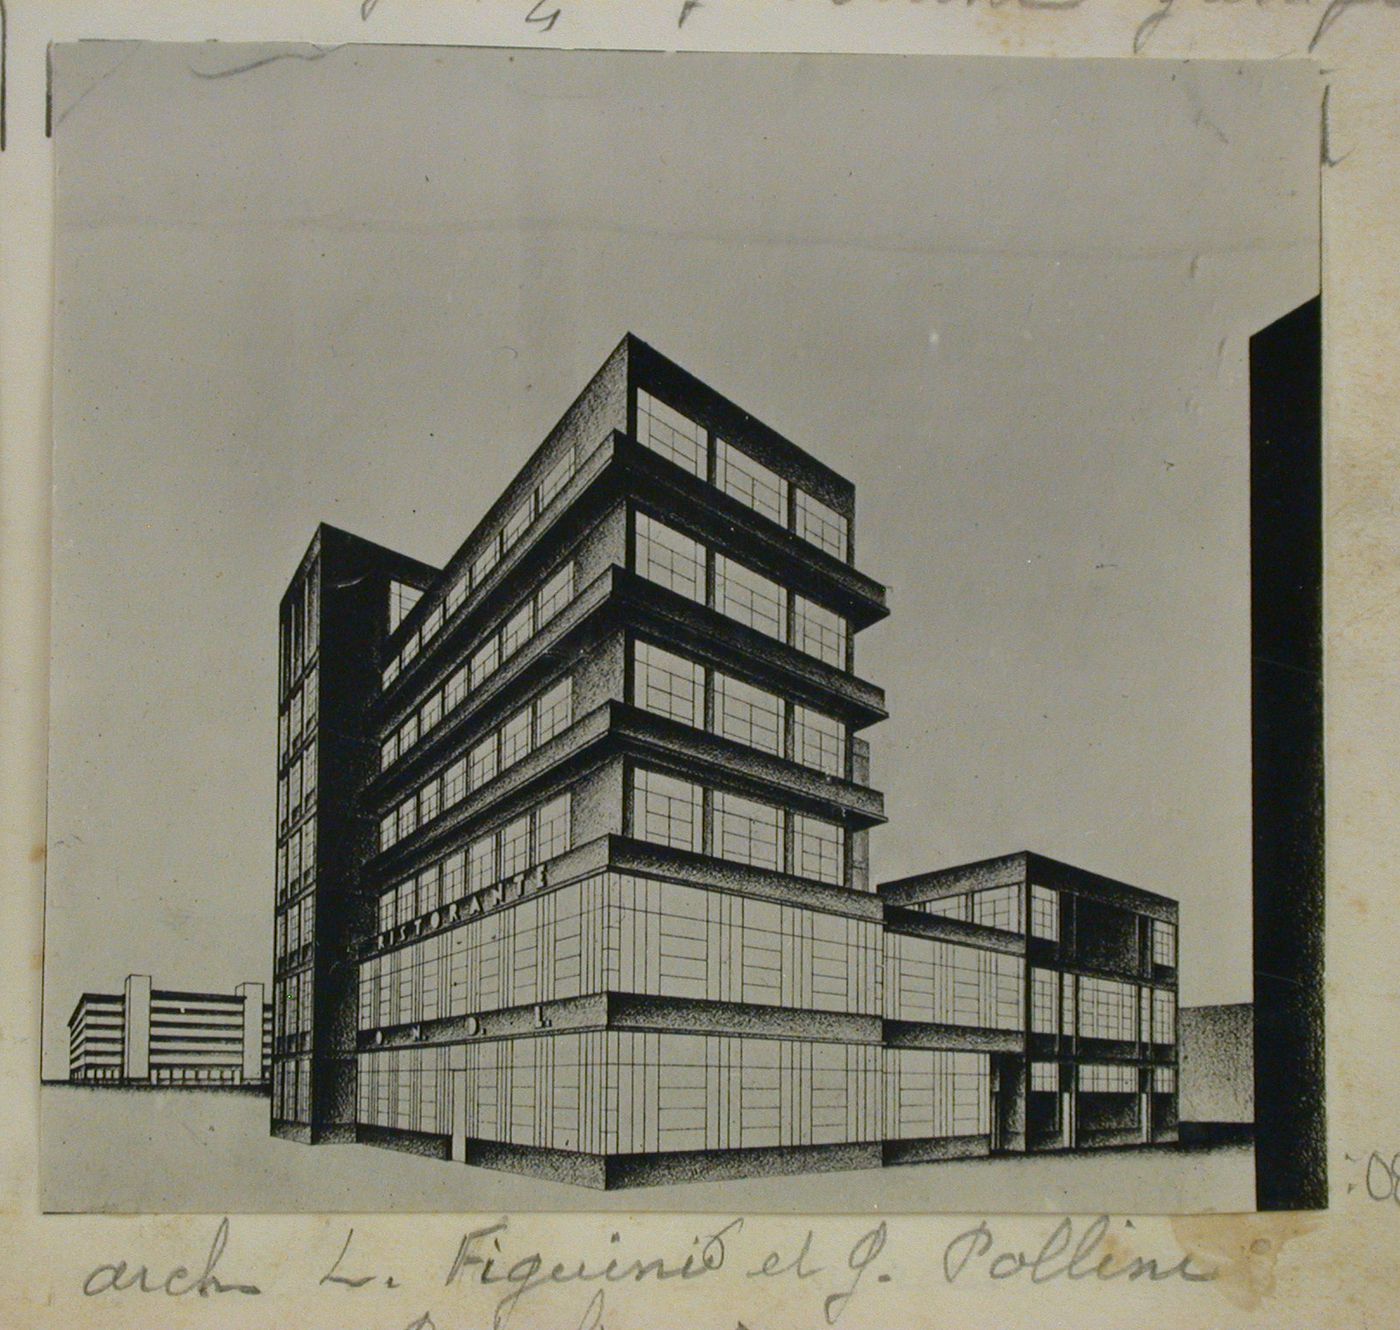 Immeuble commercial. Italie. Groupe 7. L. Figini et G. Pollini, architectes à Milan